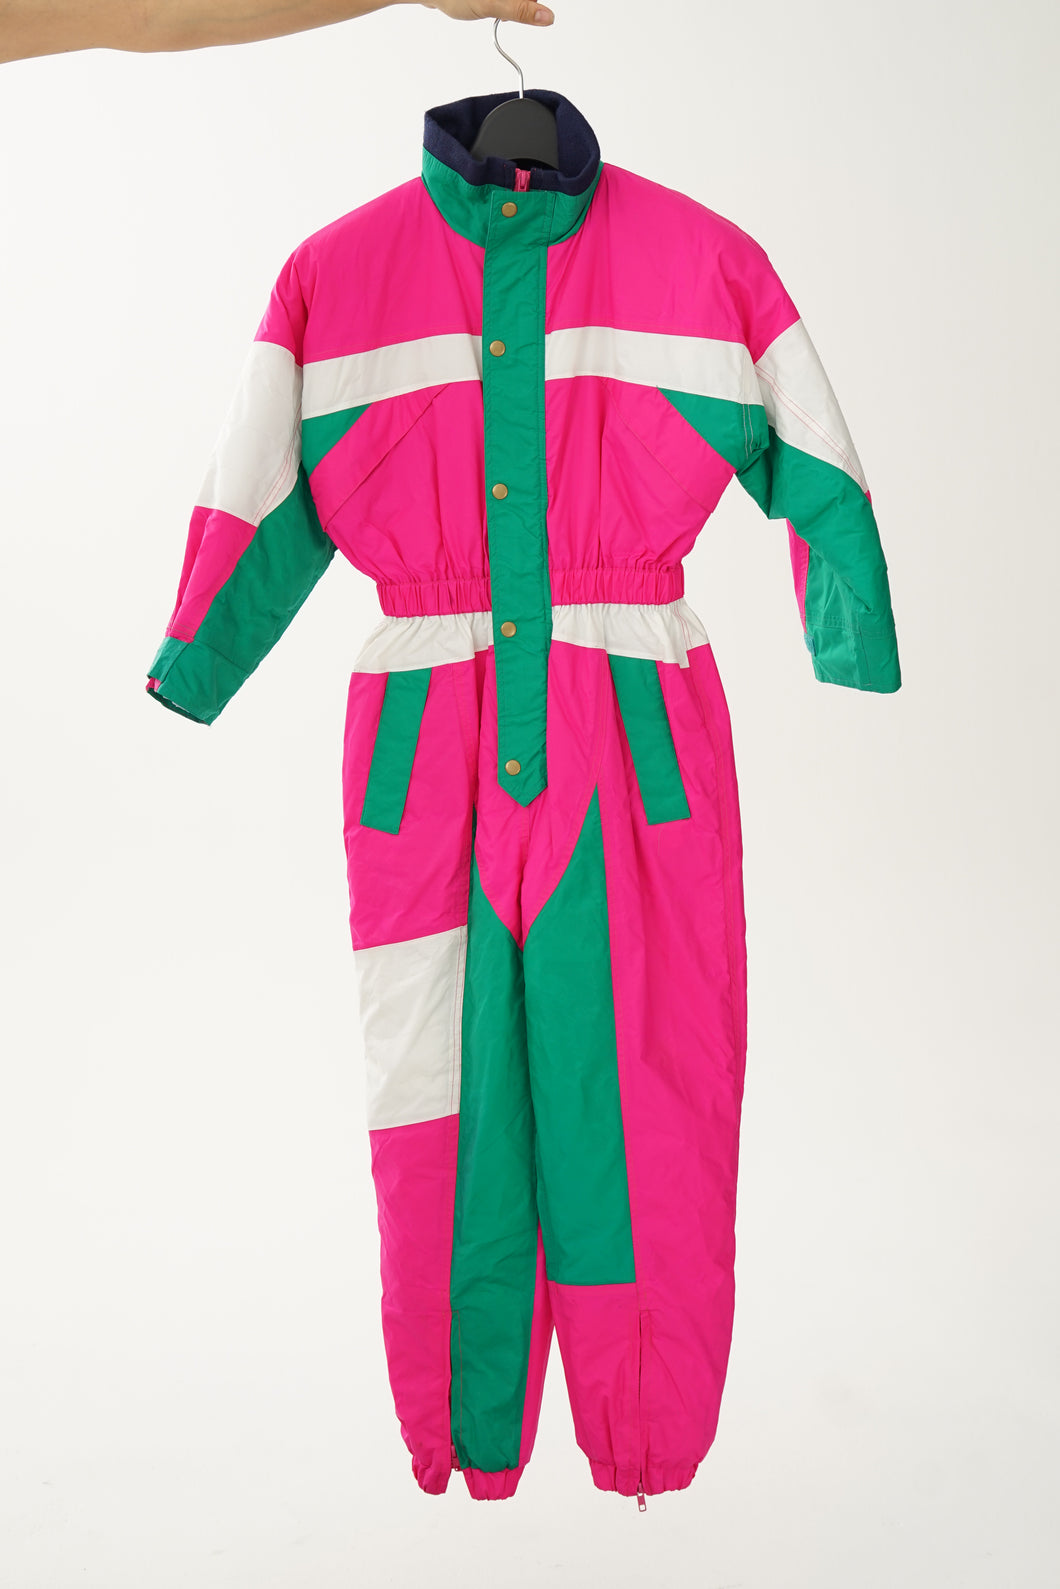 Fou vintage one piece Dit It ski suit, snow suit pour enfant rose fluo taille 14 ans